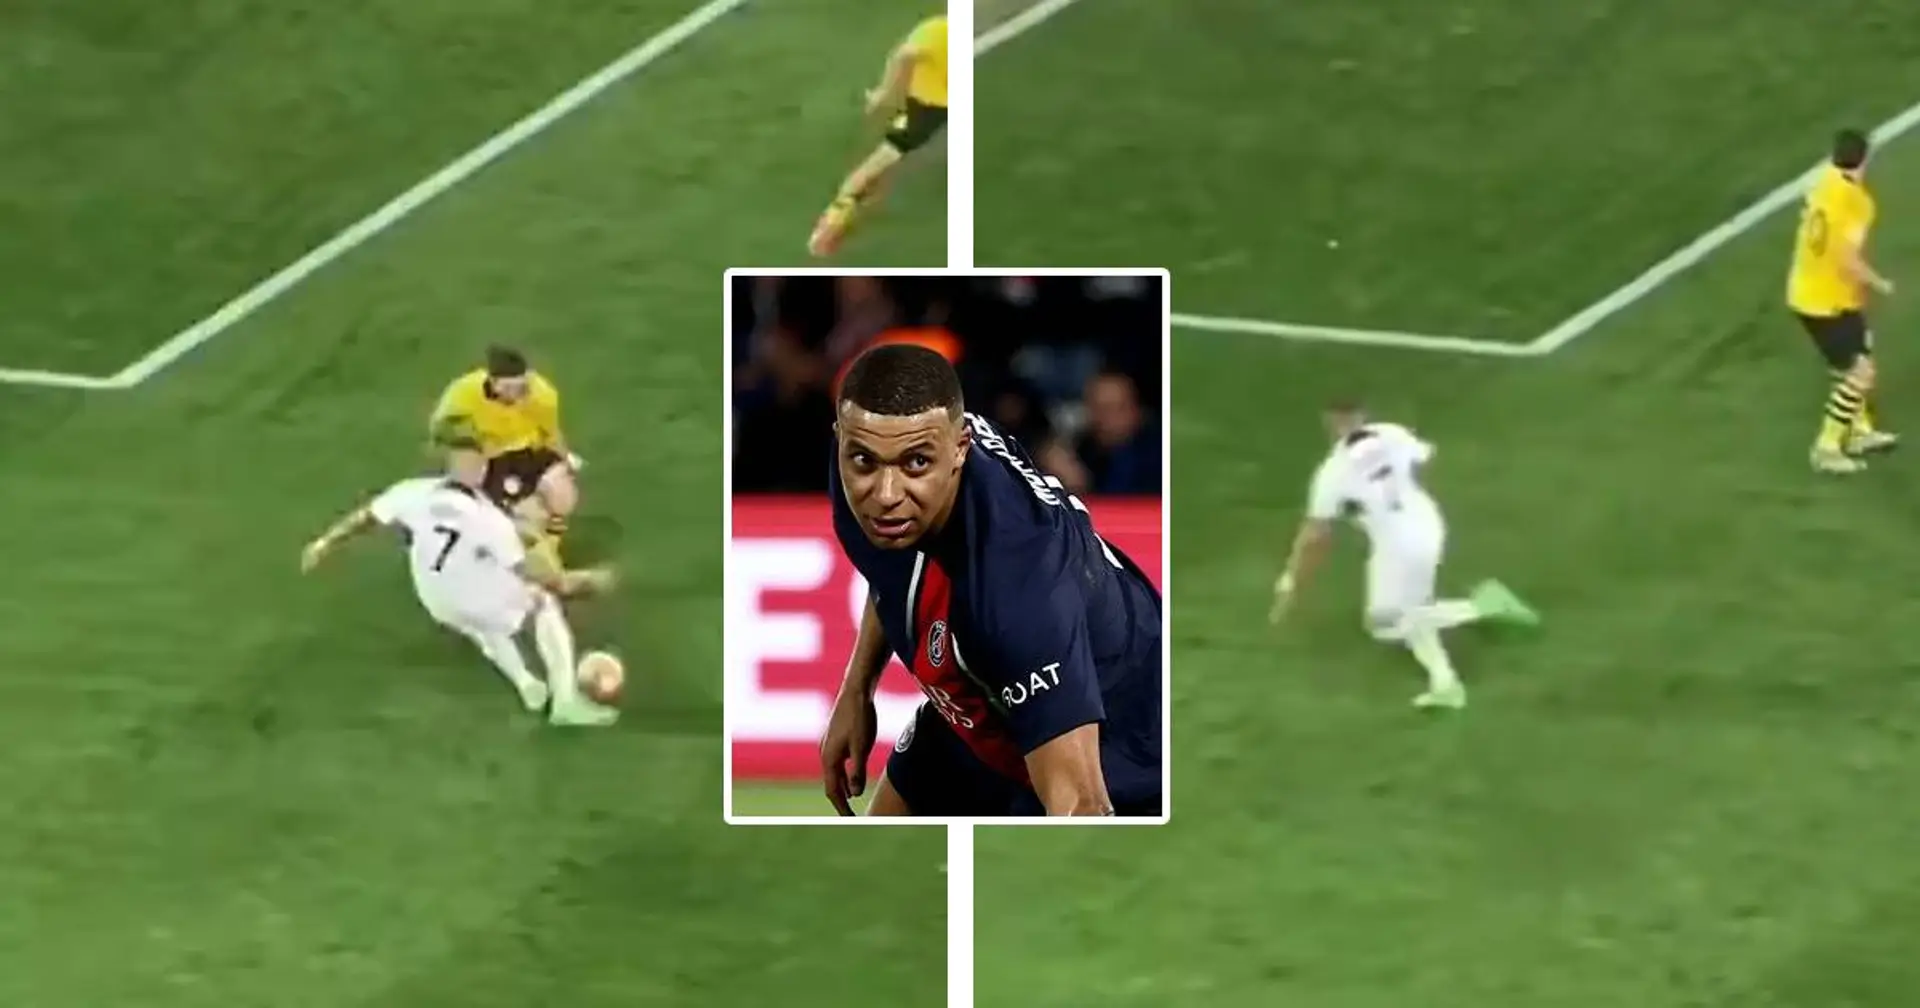 La réaction de Mbappé et Hakimi alors qu'ils touchent le poteau contre Dortmund interpelle les fans du PSG